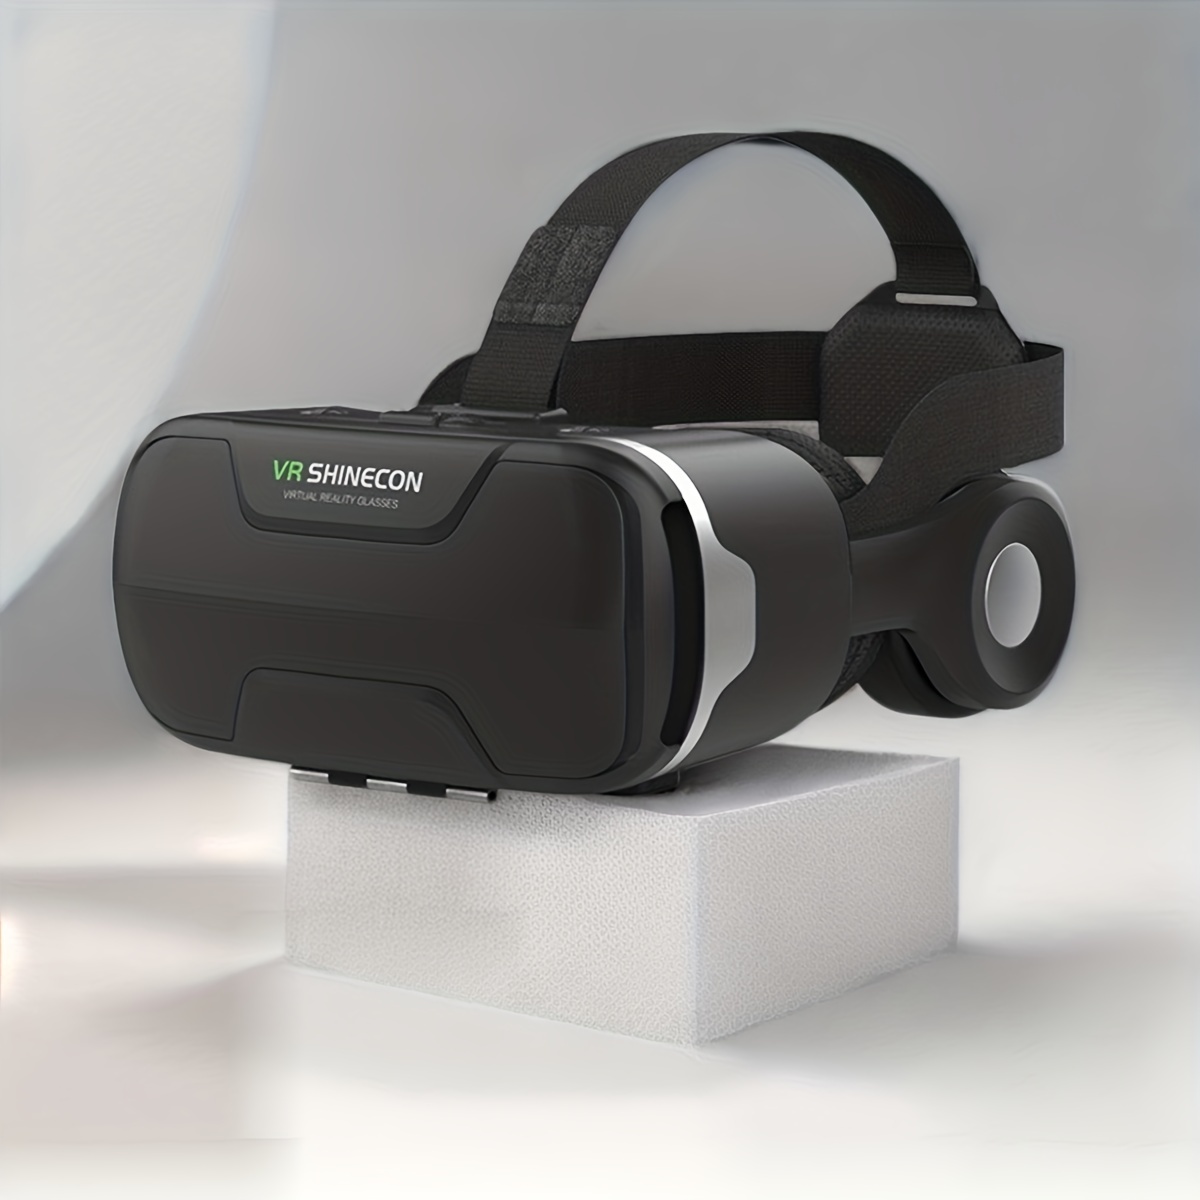 DESTEK Auriculares de realidad virtual, gafas de realidad virtual para  películas, video, juegos - Gafas 3D VR para iPhone para Android y otros